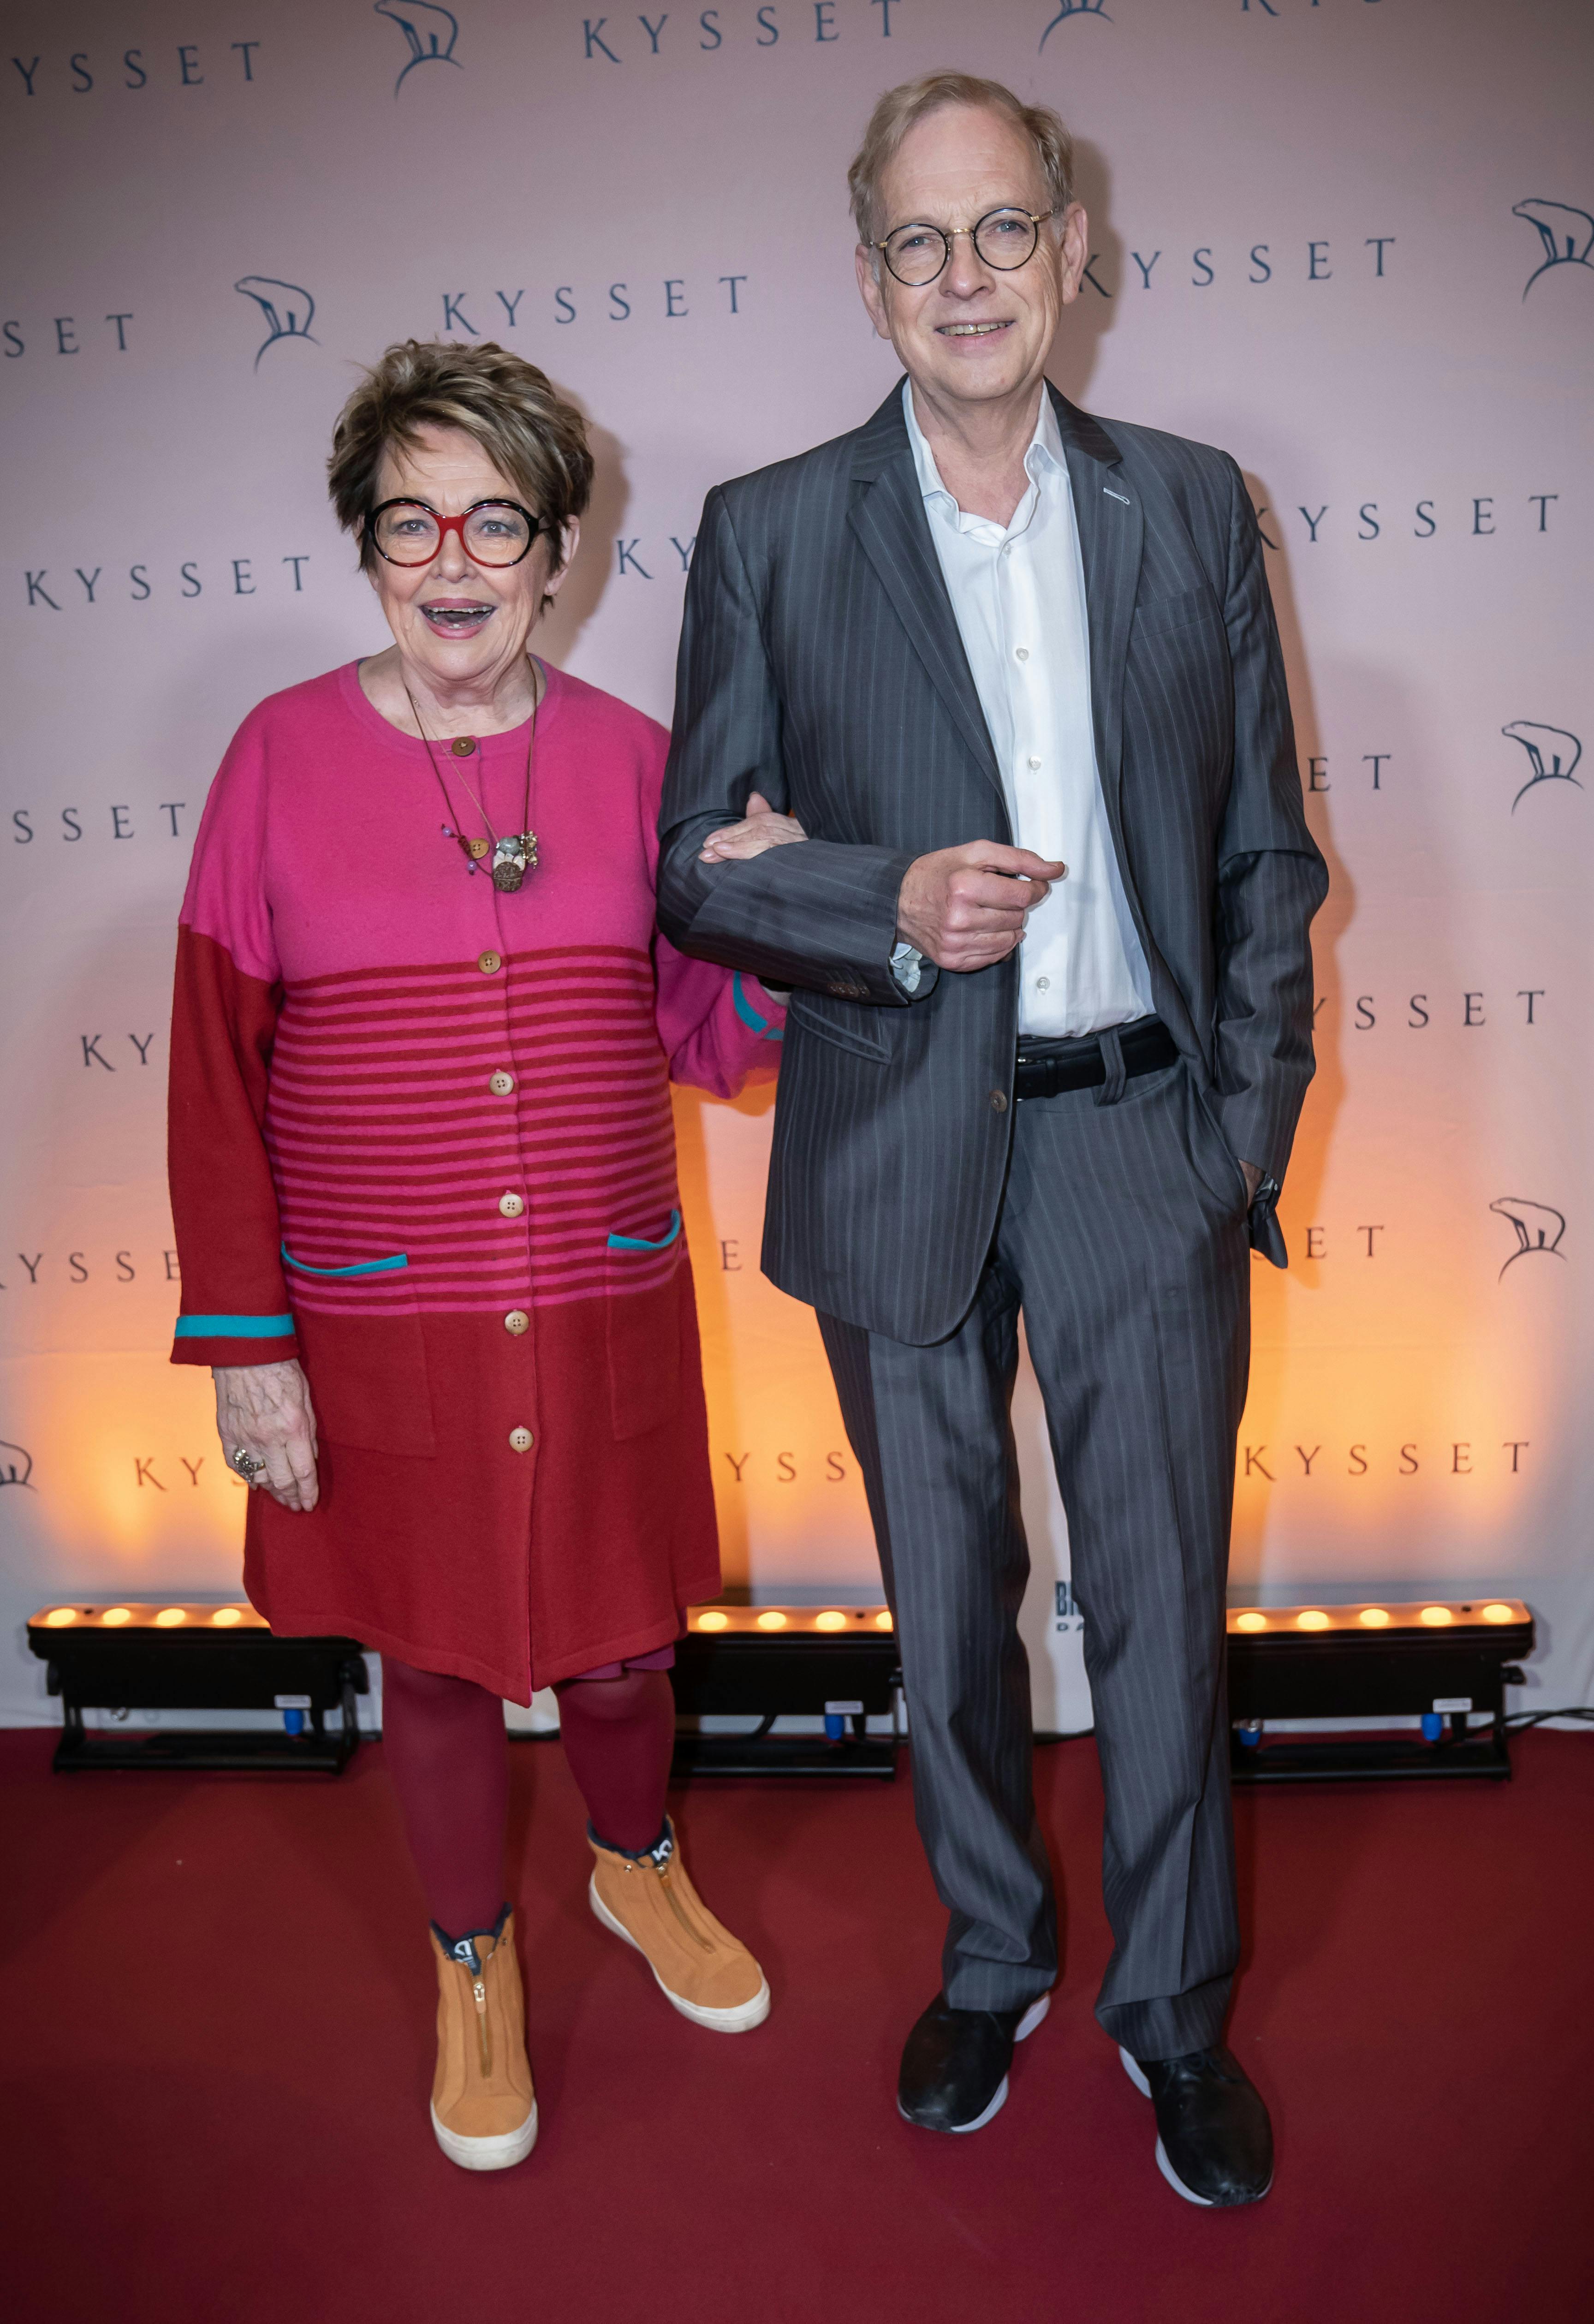 Michael Moritzen havde selskab af Ghita Nørby til premieren på "Kysset" i februar.&nbsp;
